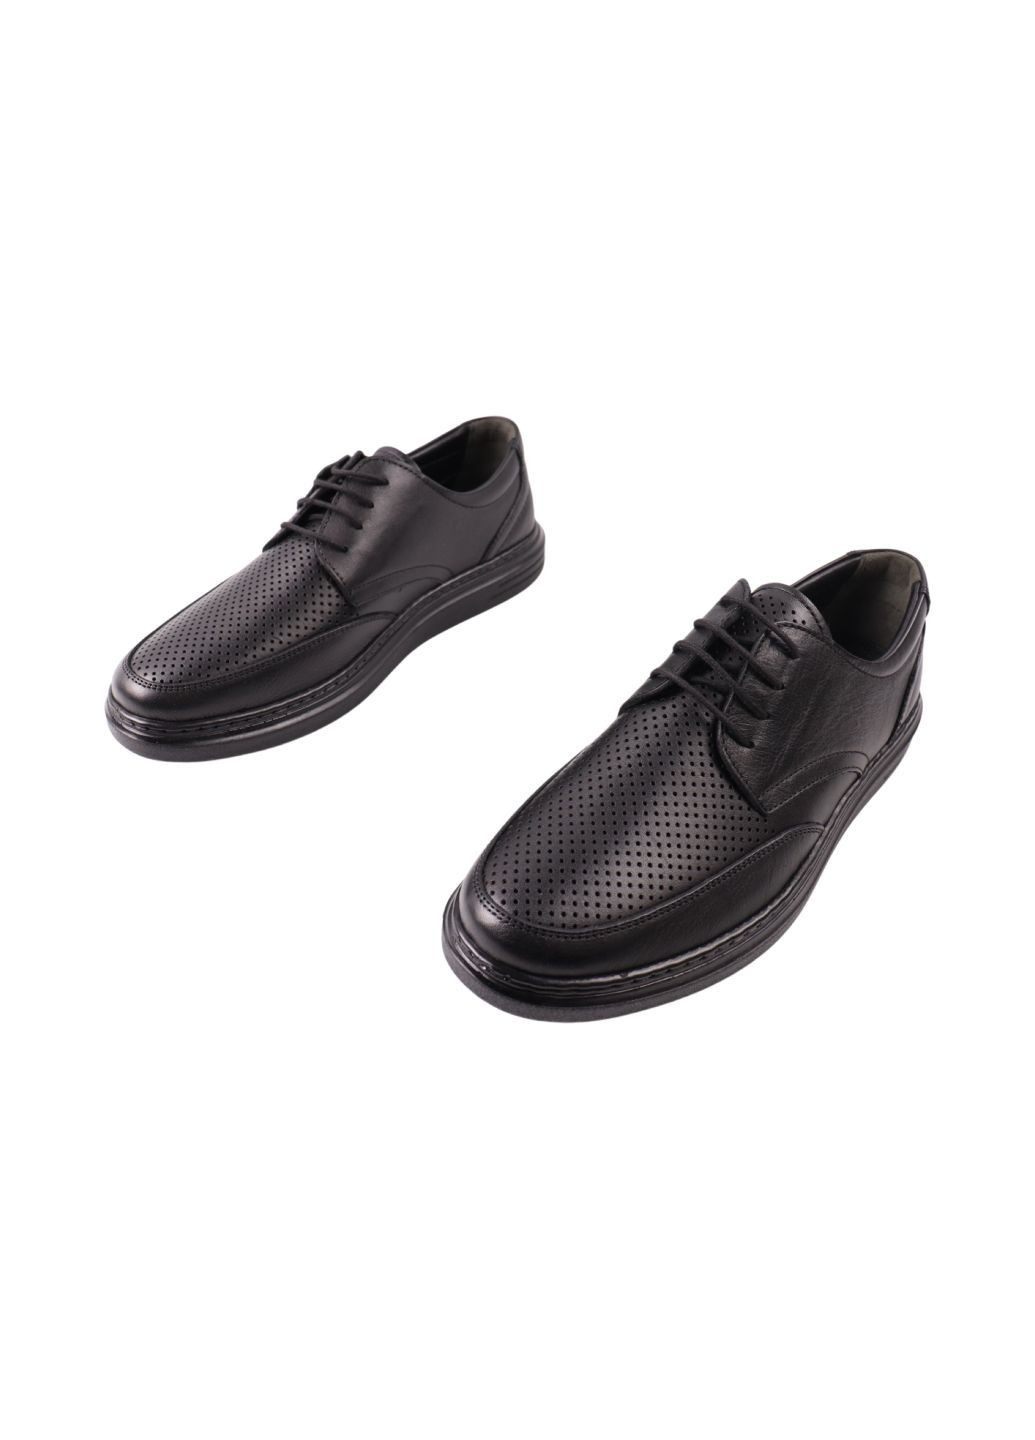 Черные туфли мужские черные натуральная кожа ALTURA